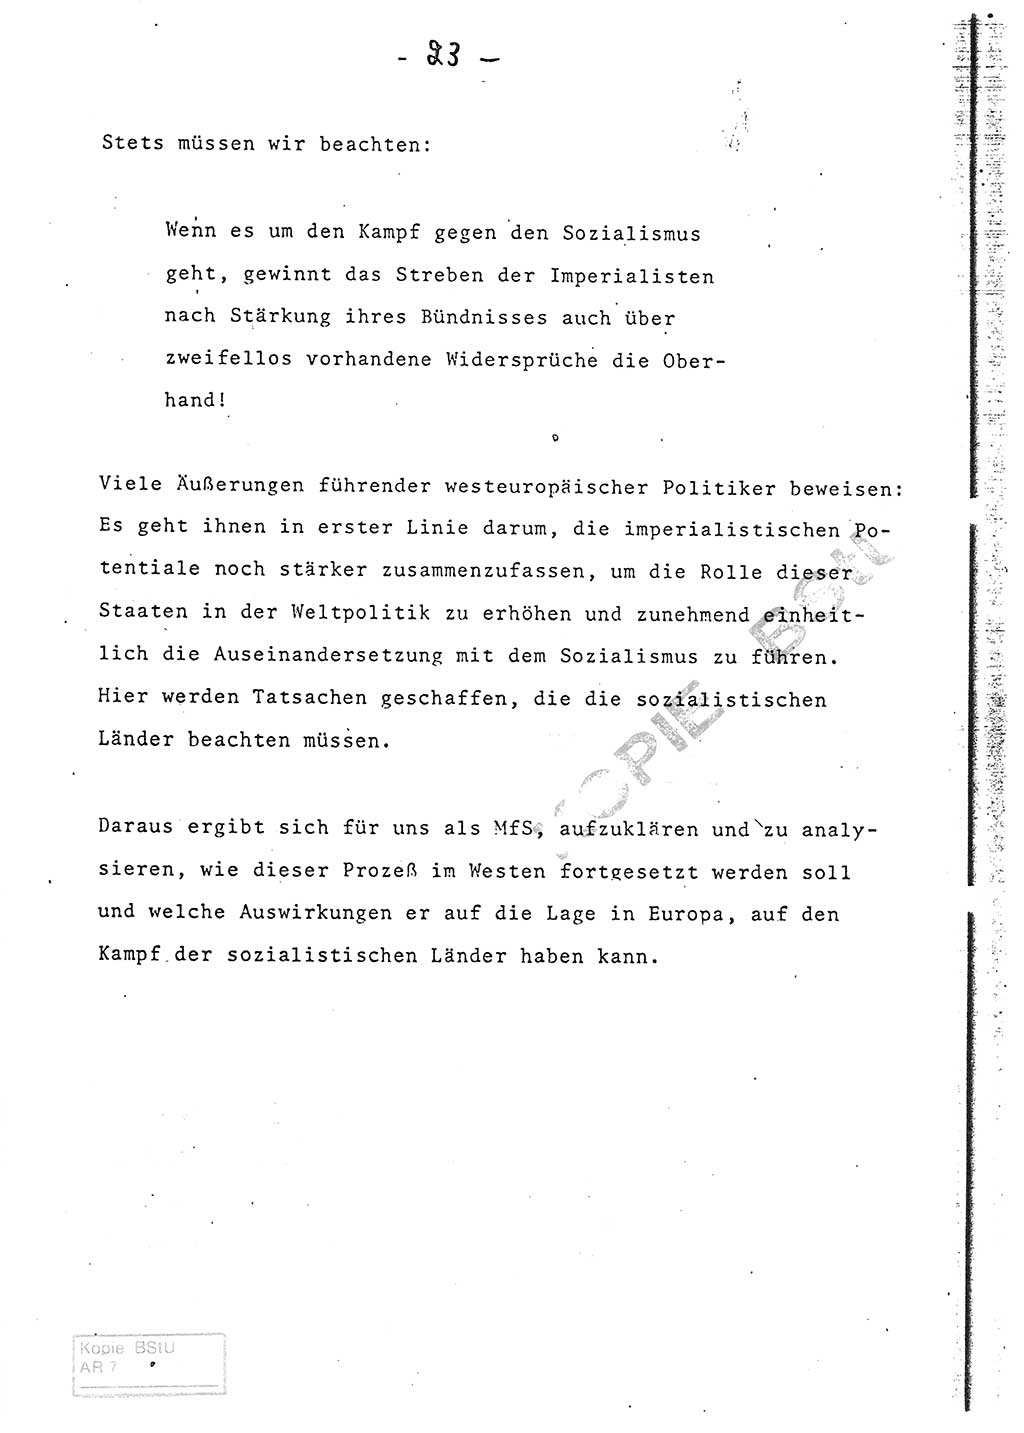 Referat (Entwurf) des Genossen Minister (Generaloberst Erich Mielke) auf der Dienstkonferenz 1972, Ministerium für Staatssicherheit (MfS) [Deutsche Demokratische Republik (DDR)], Der Minister, Geheime Verschlußsache (GVS) 008-150/72, Berlin 25.2.1972, Seite 23 (Ref. Entw. DK MfS DDR Min. GVS 008-150/72 1972, S. 23)